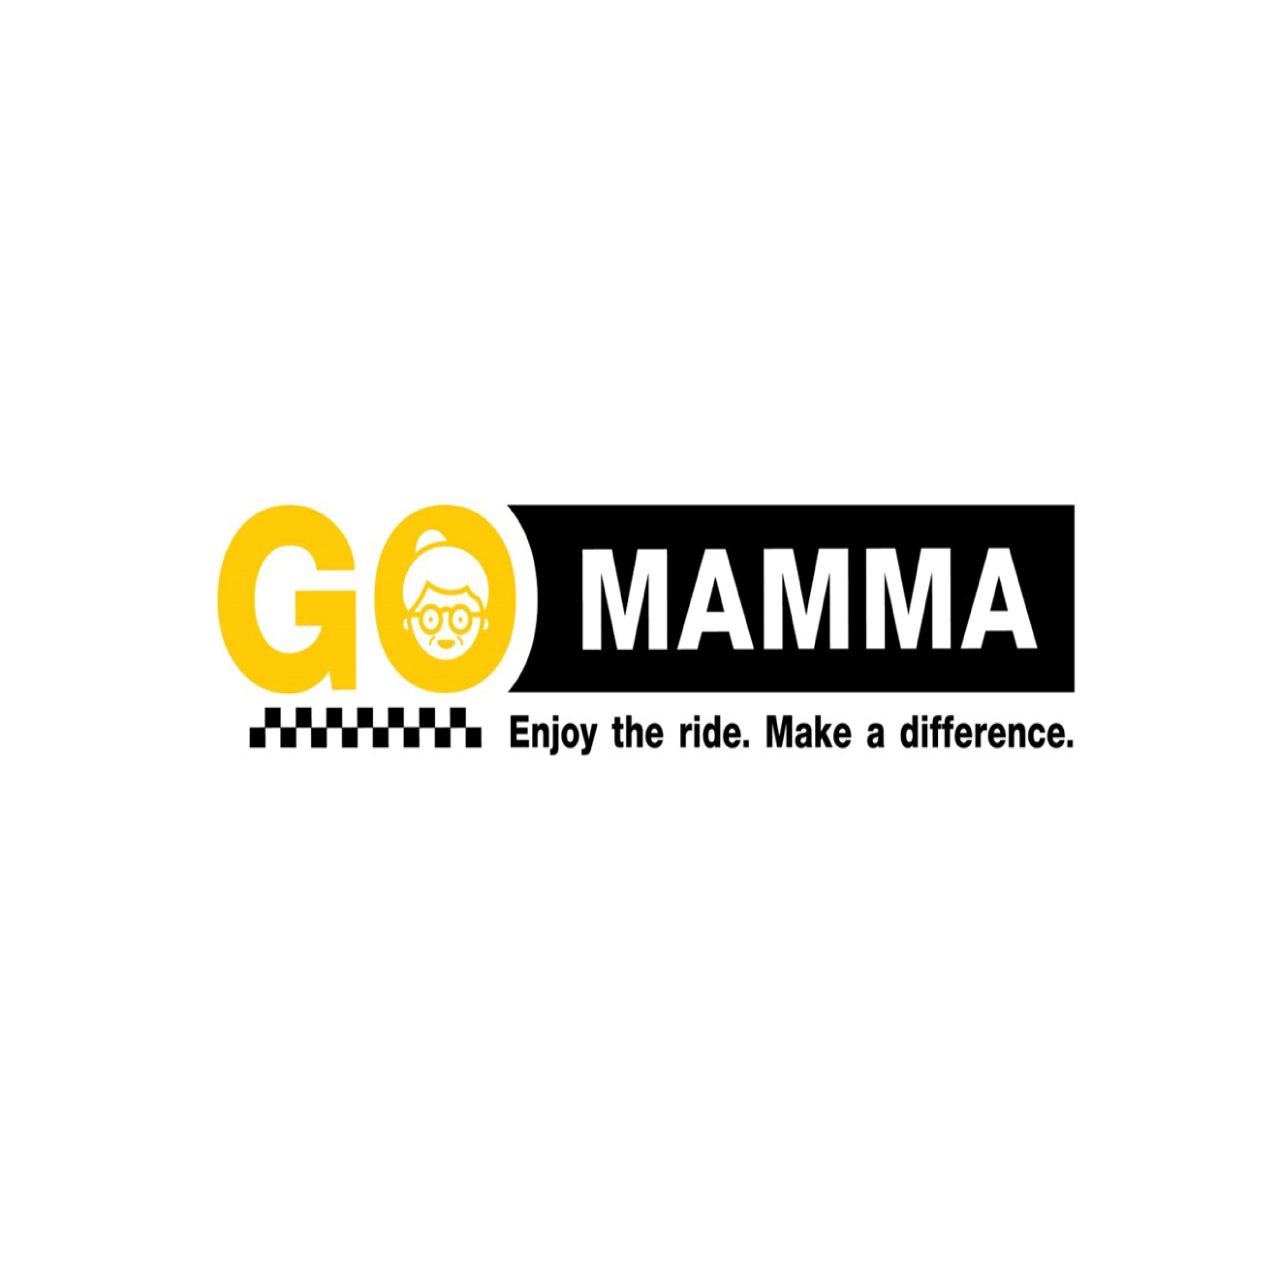 GO-MAMMA-2